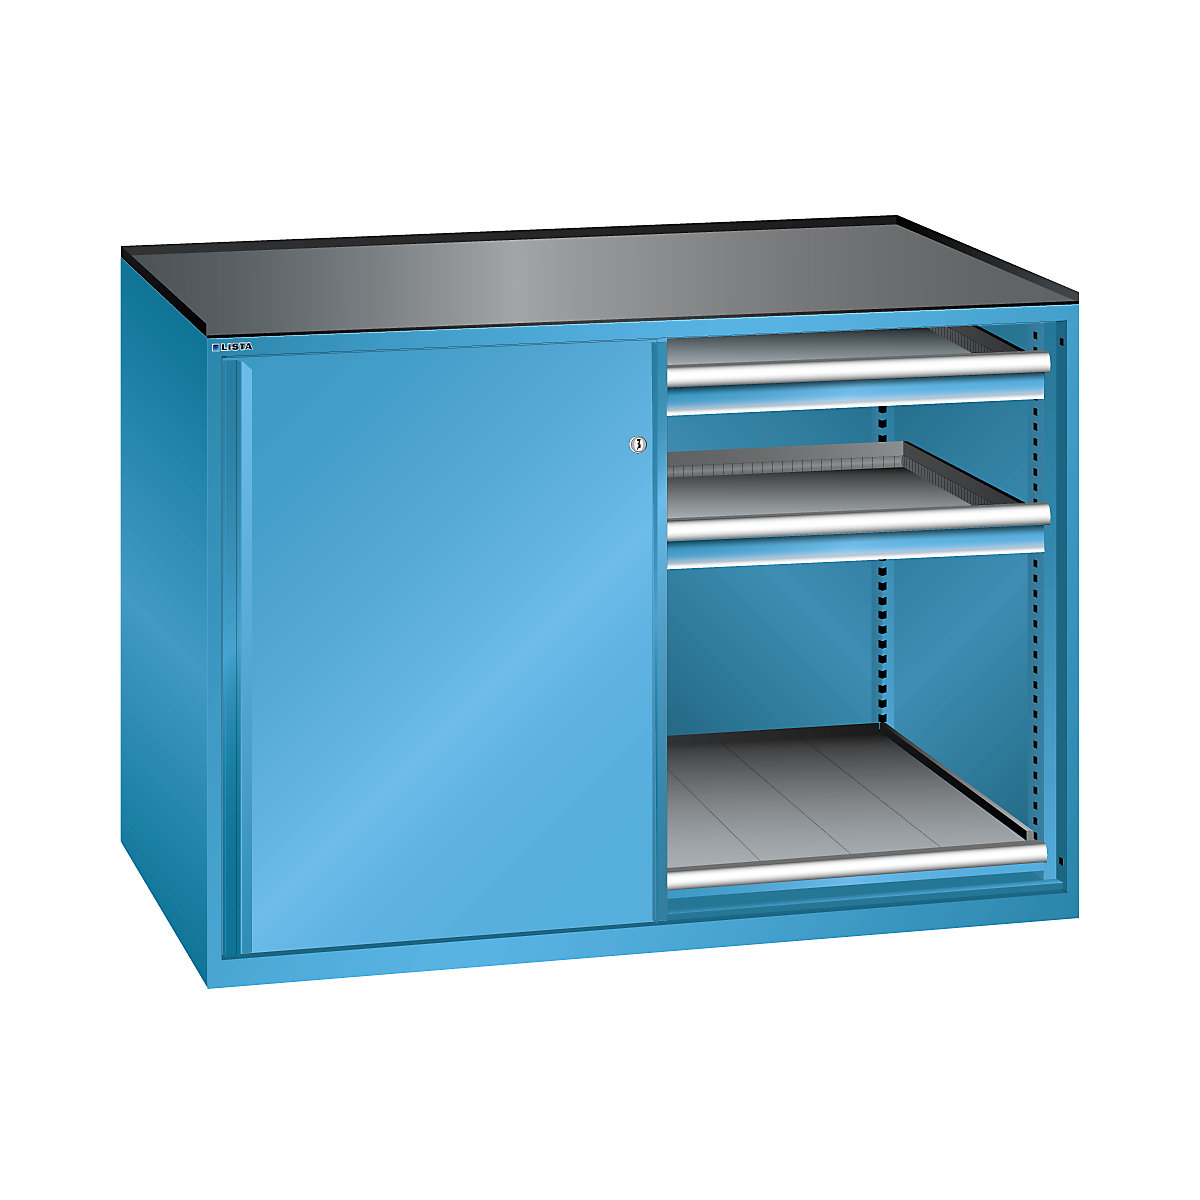 Szafa z drzwiami przesuwnymi, nośność półki wysuwanej 75 kg – LISTA, 4 szuflady, 2 półki wysuwane, jasnoniebieska-1